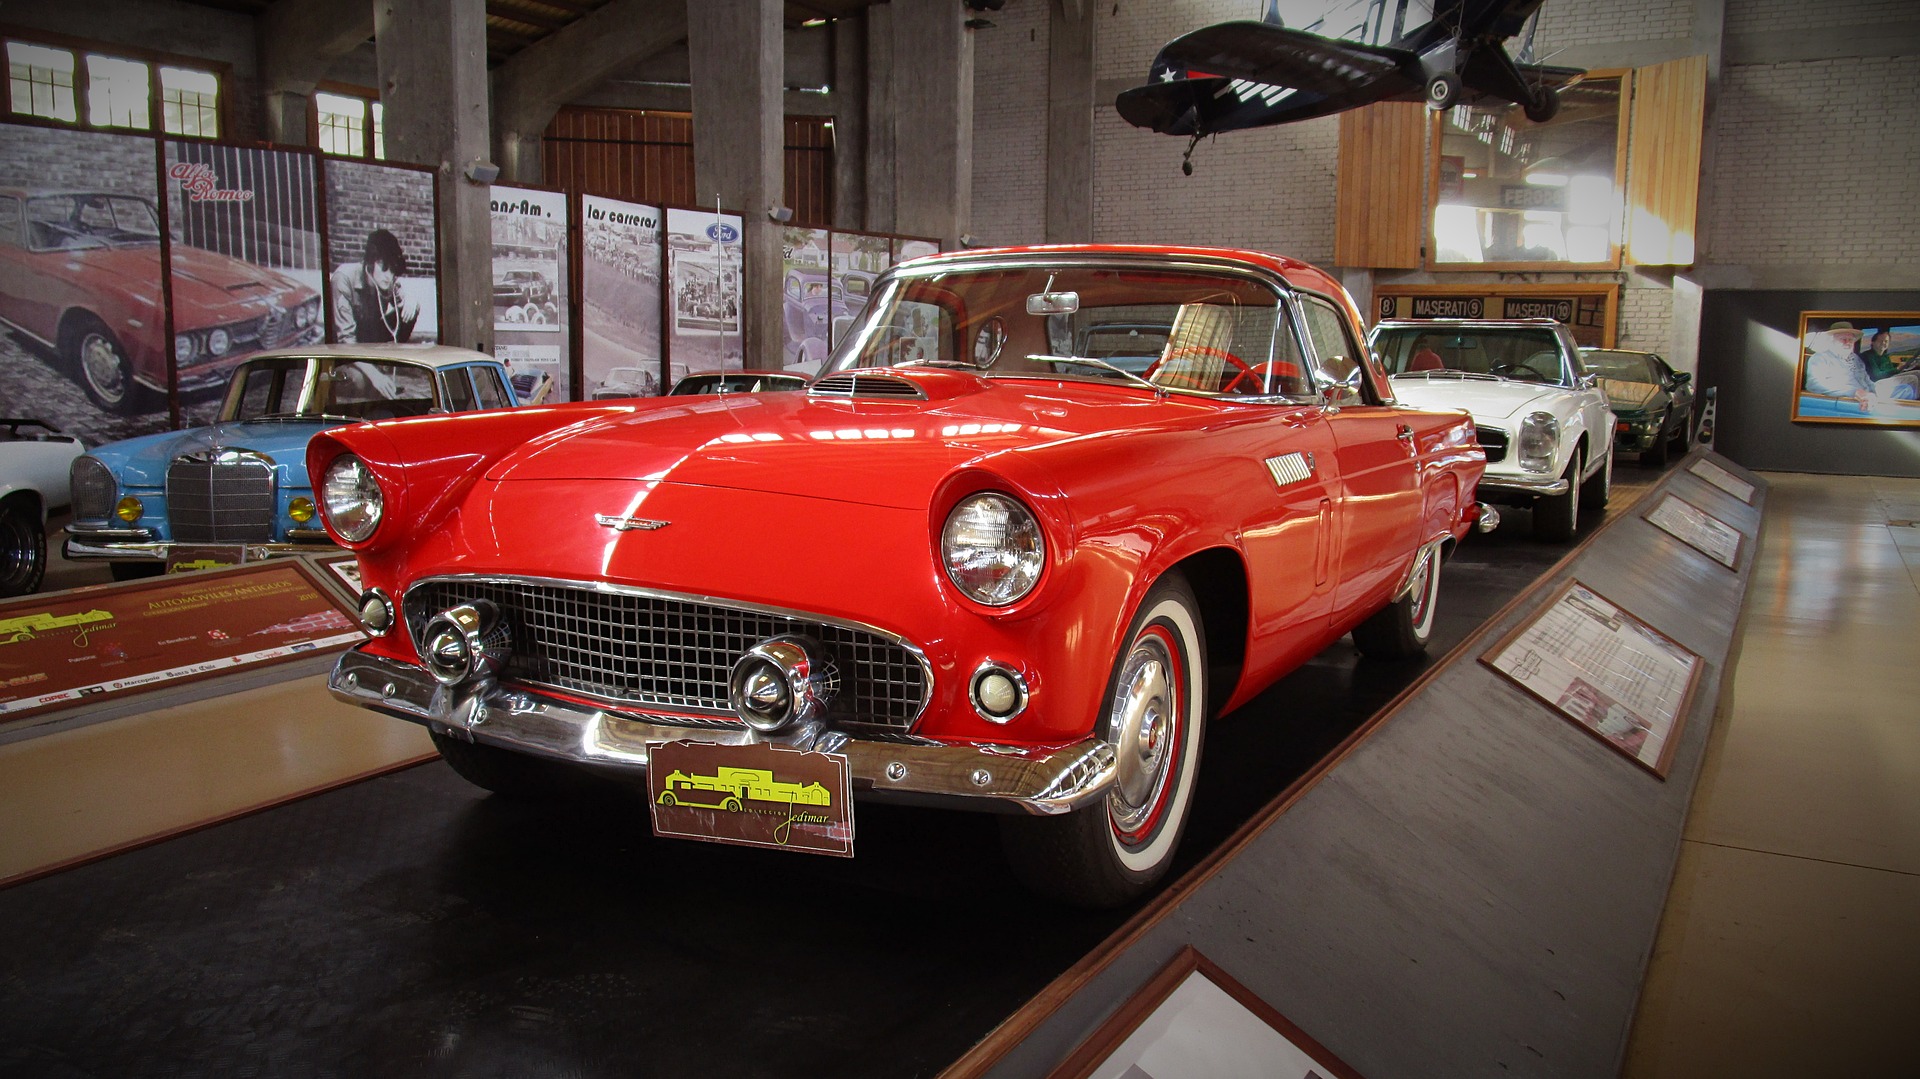 car in car museum